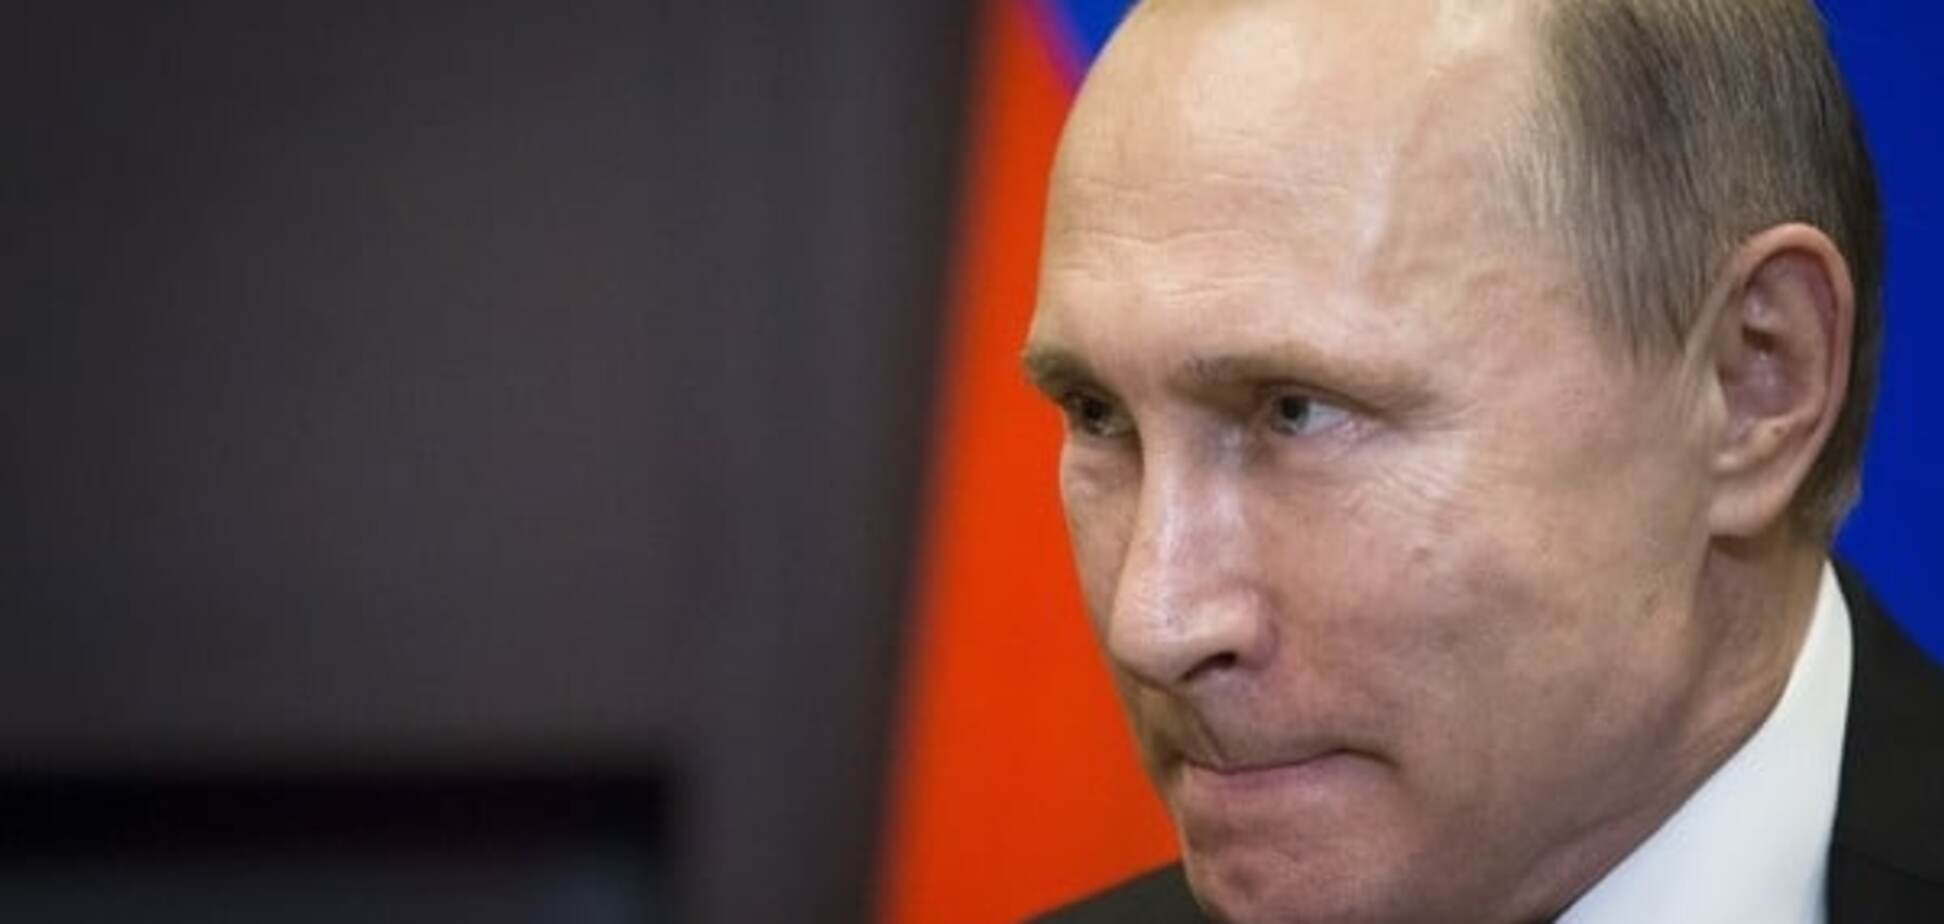 Это сделает улица или окружение Путина: оппозиционер озвучил сценарии смены власти в России